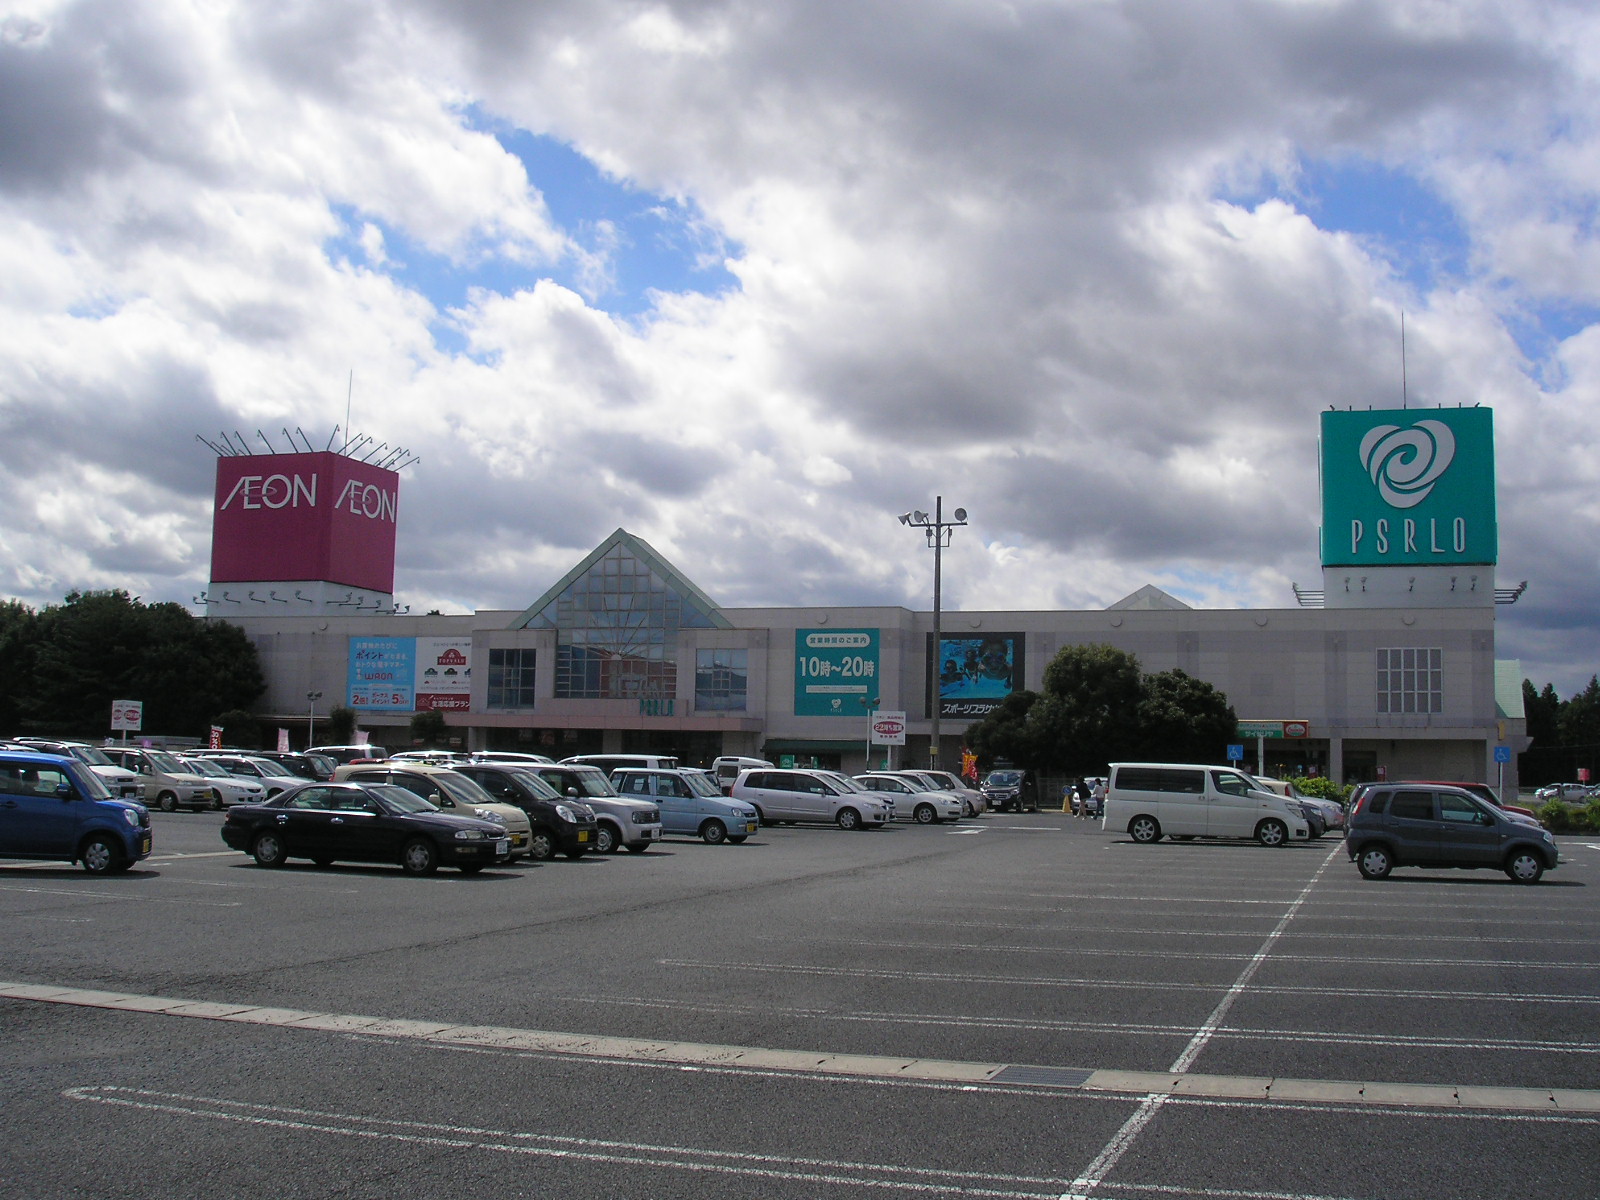 Shopping centre. Hitachi 1768m to Omiya shopping center Pizarro (shopping center)